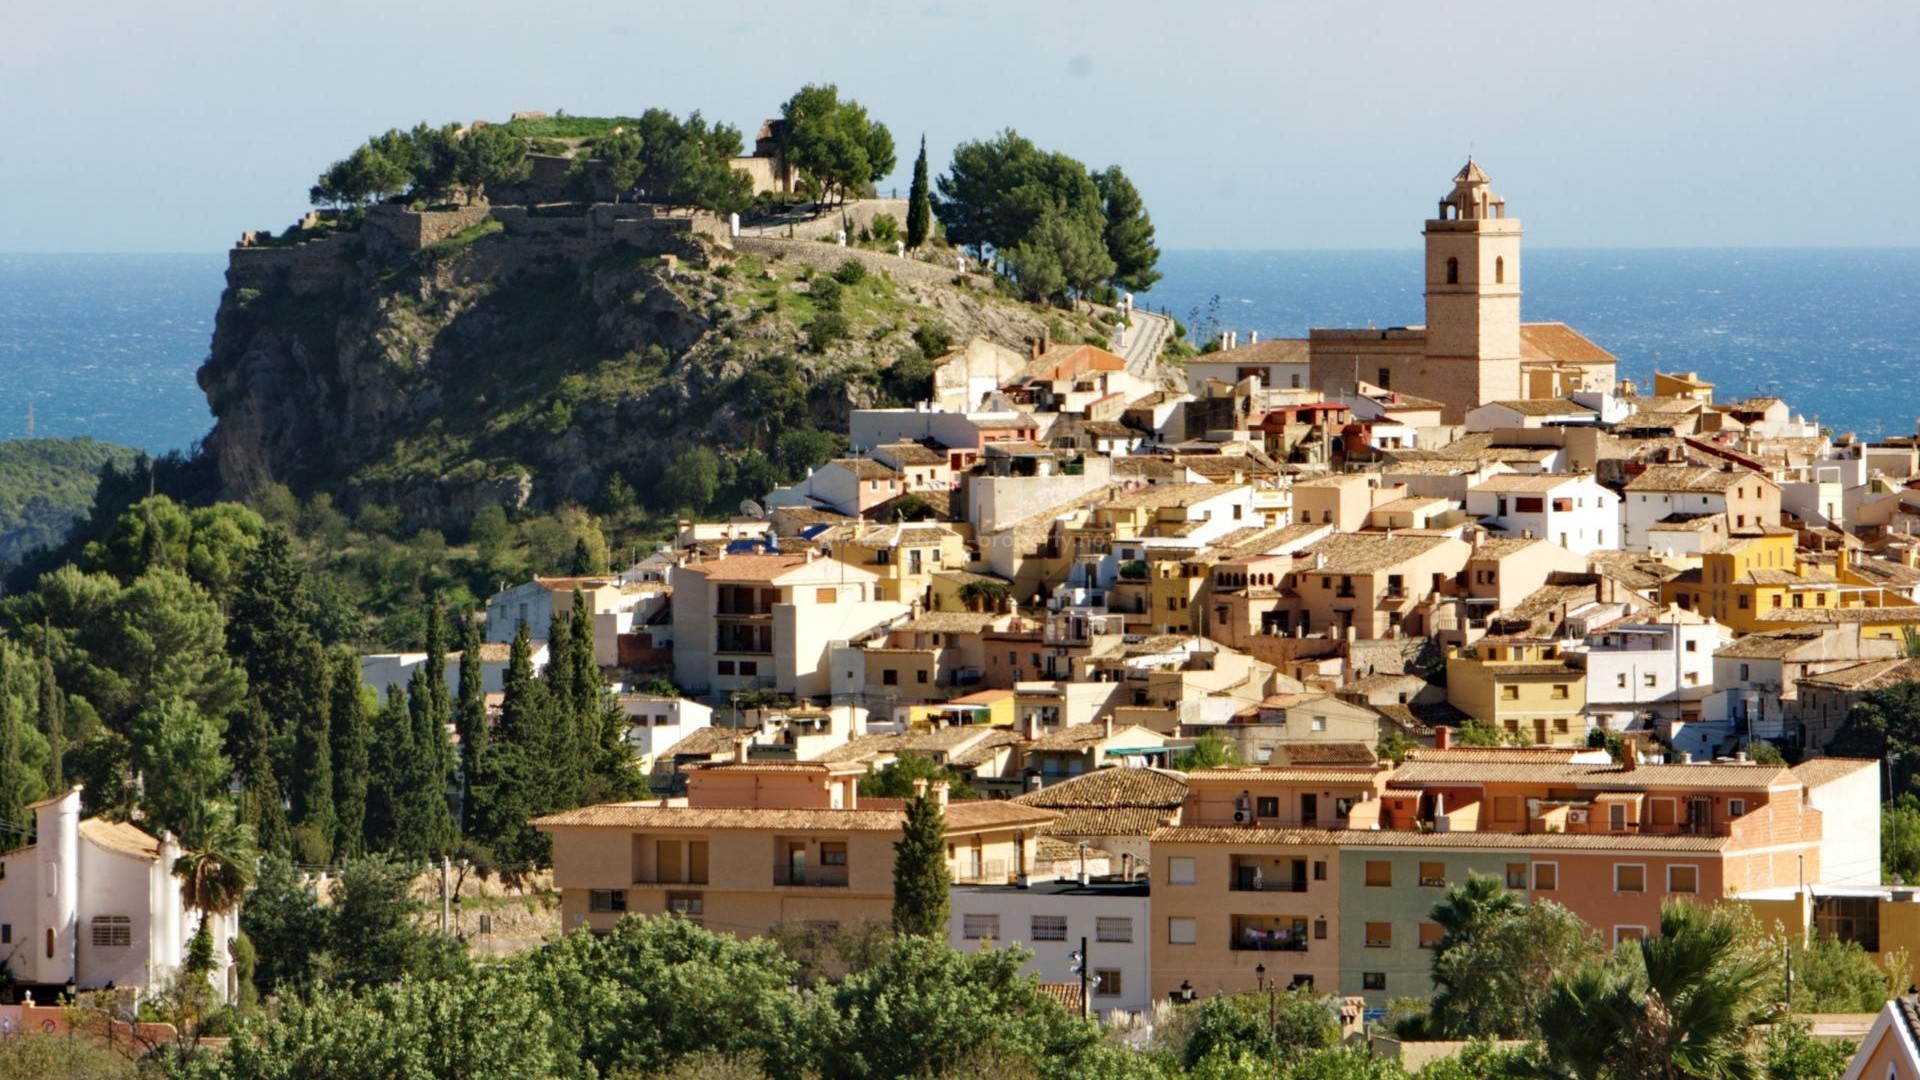 Nye villaer/hus i Polop, Alicante, 3 soverom, 3 bad, hage med basseng, overbygd terrasse og en stor åpen terrasse, utsikt over havet og fjellene